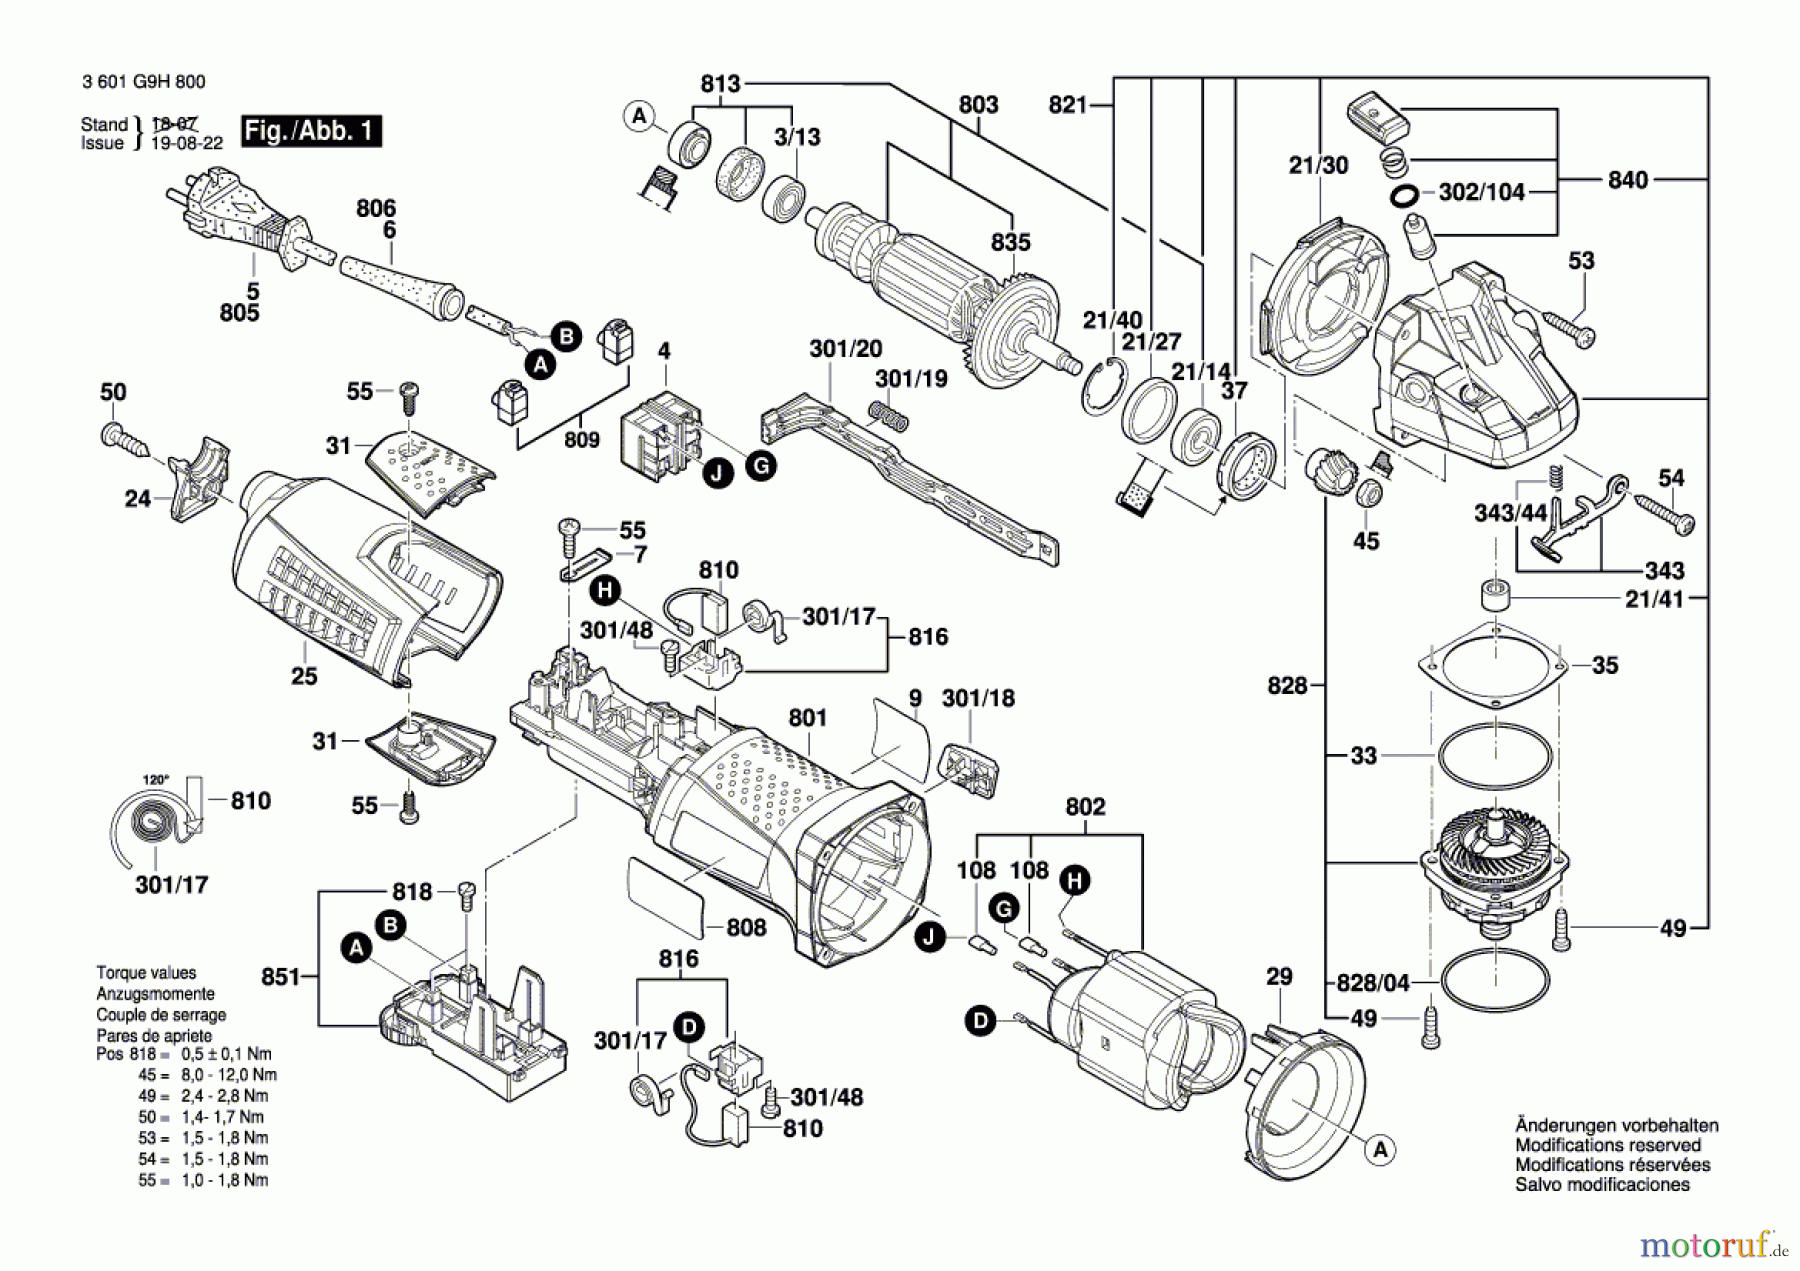  Bosch Werkzeug Winkelschleifer WKS 17-125 RE Seite 1